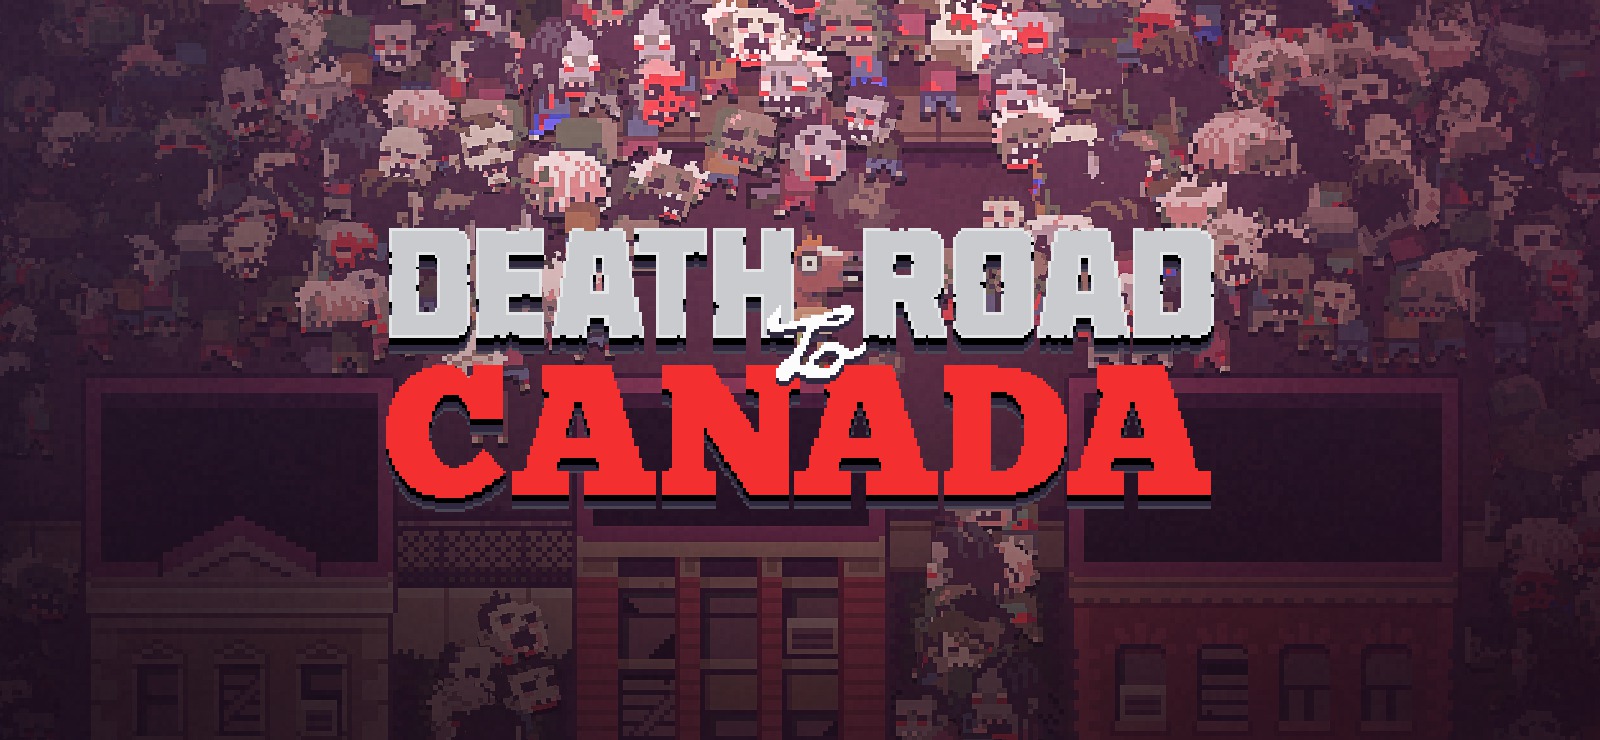 Death Road To Canada saldrá el 25 de abril en Nintendo Switch, PlayStation 4 y Xbox One